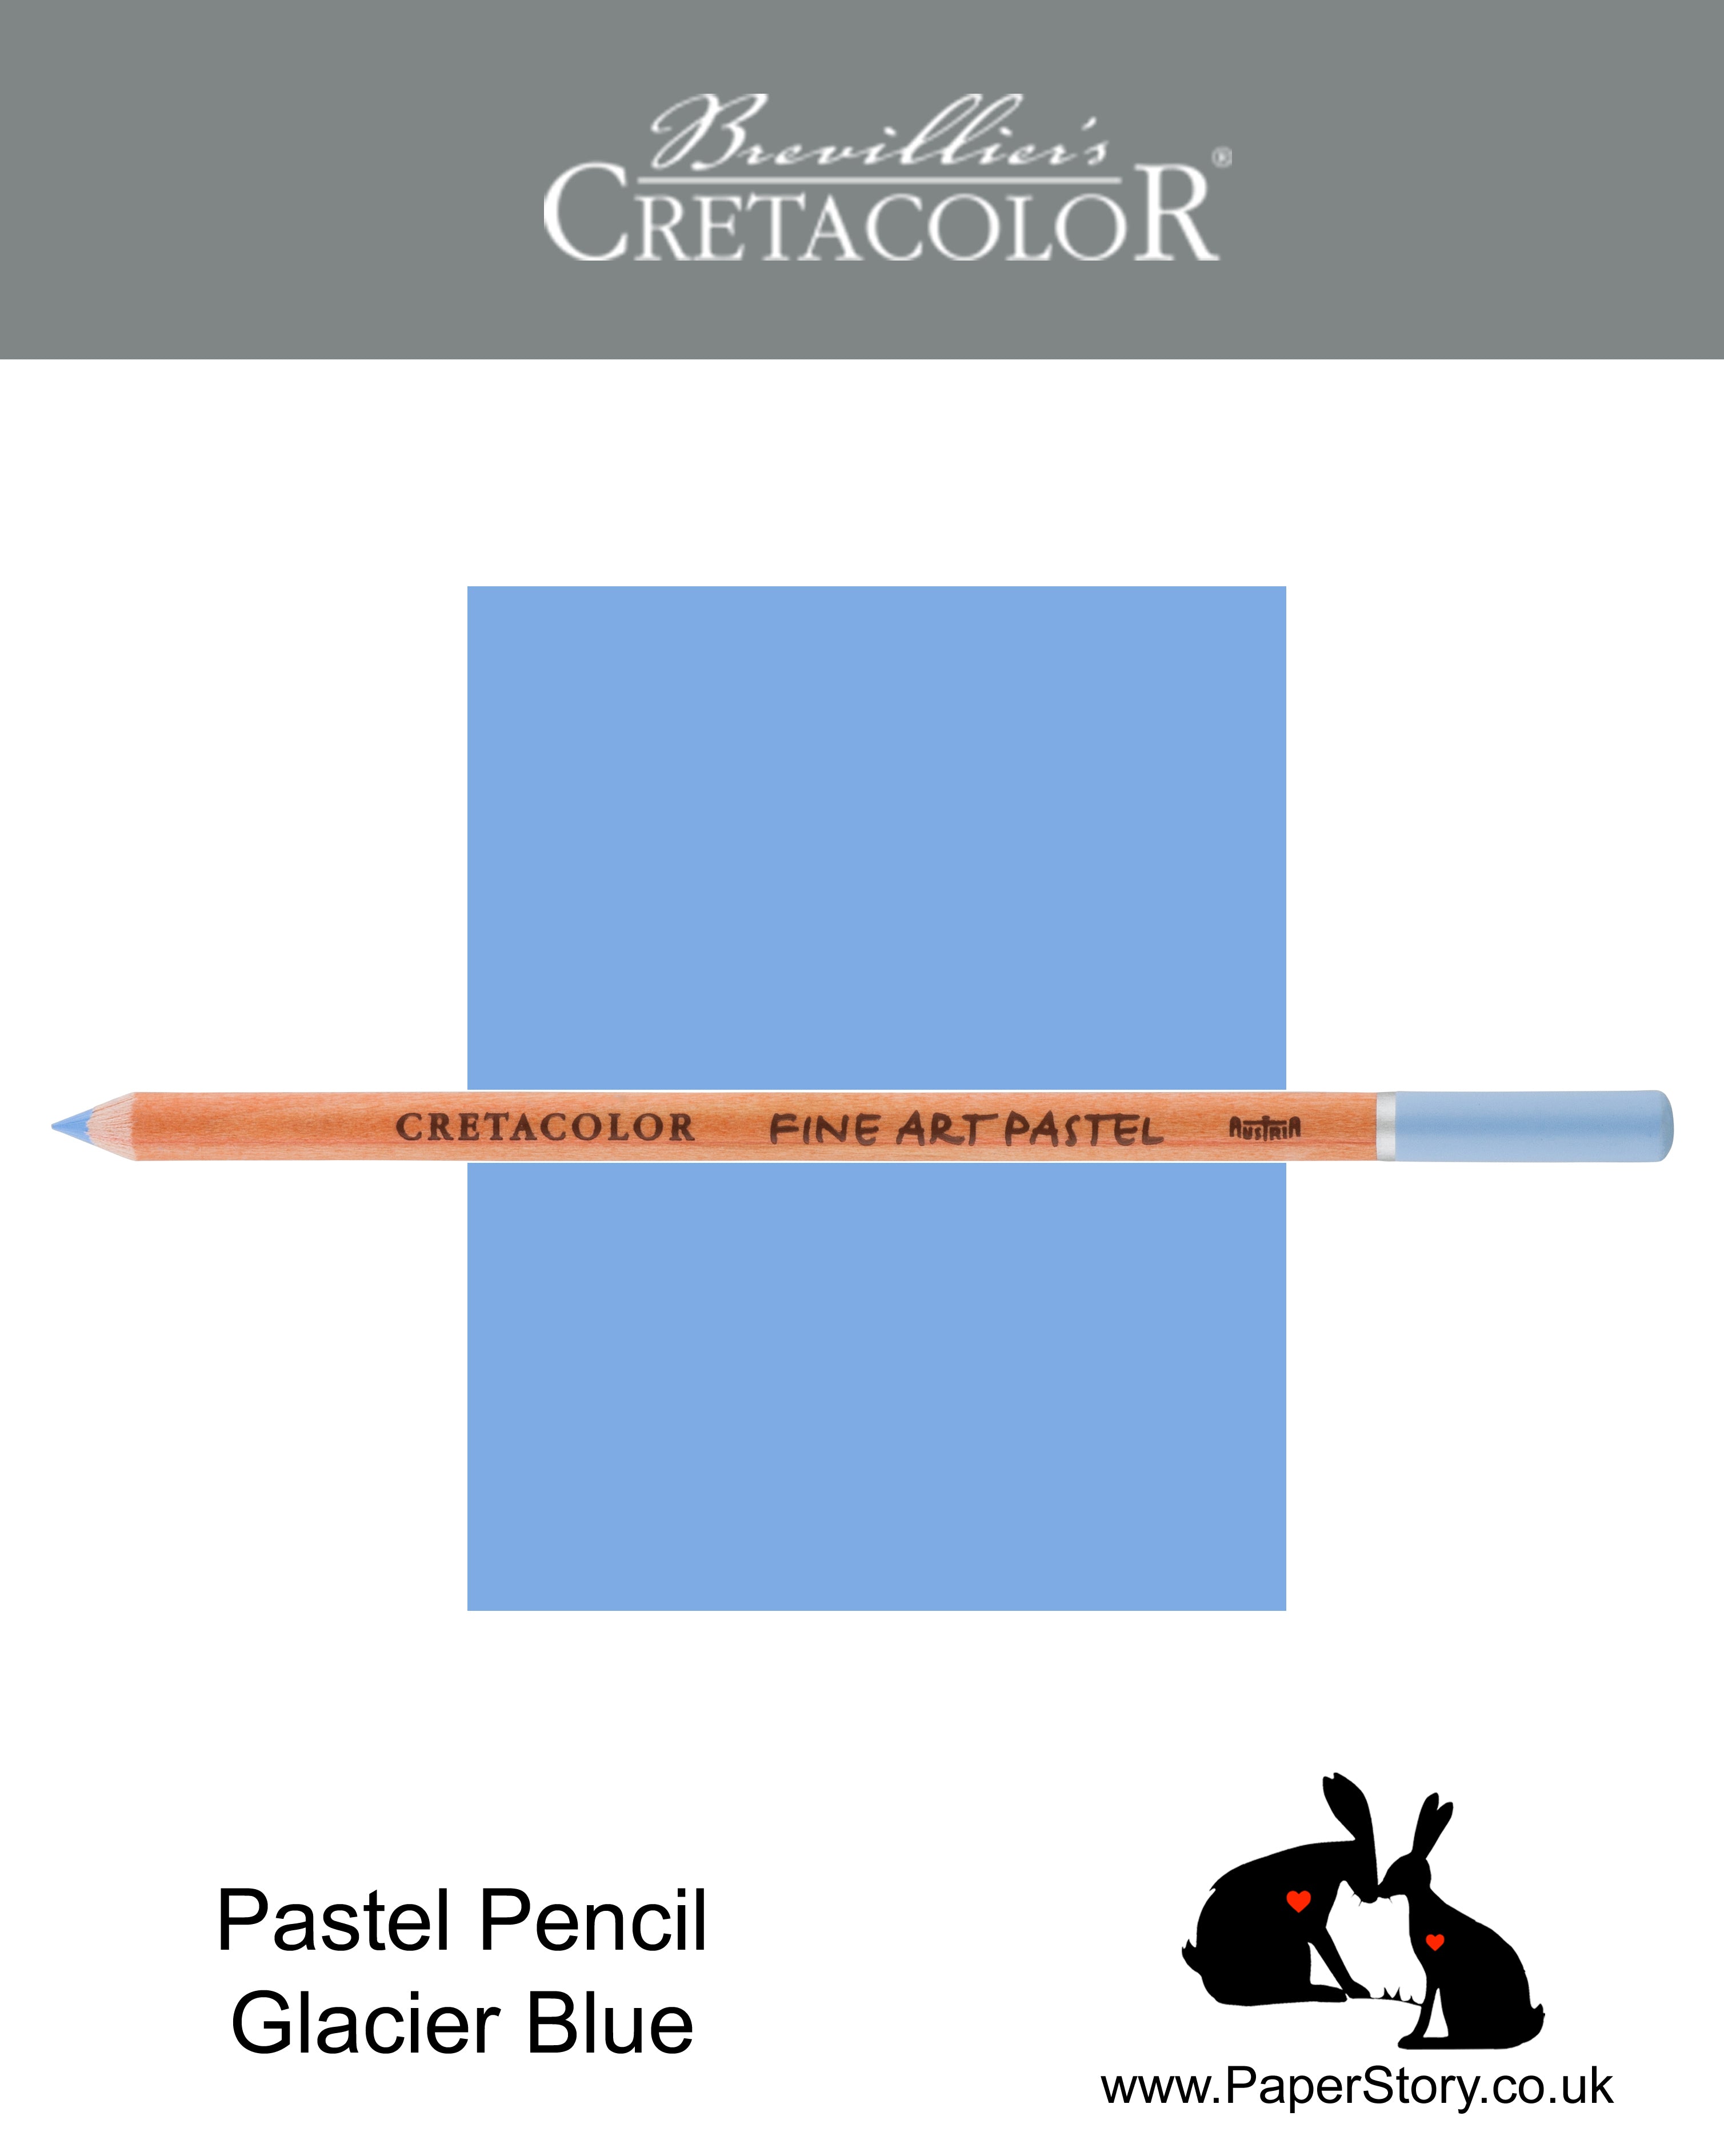 Cretacolor 471 51 Artists Pastel Pencil Glacier Blue